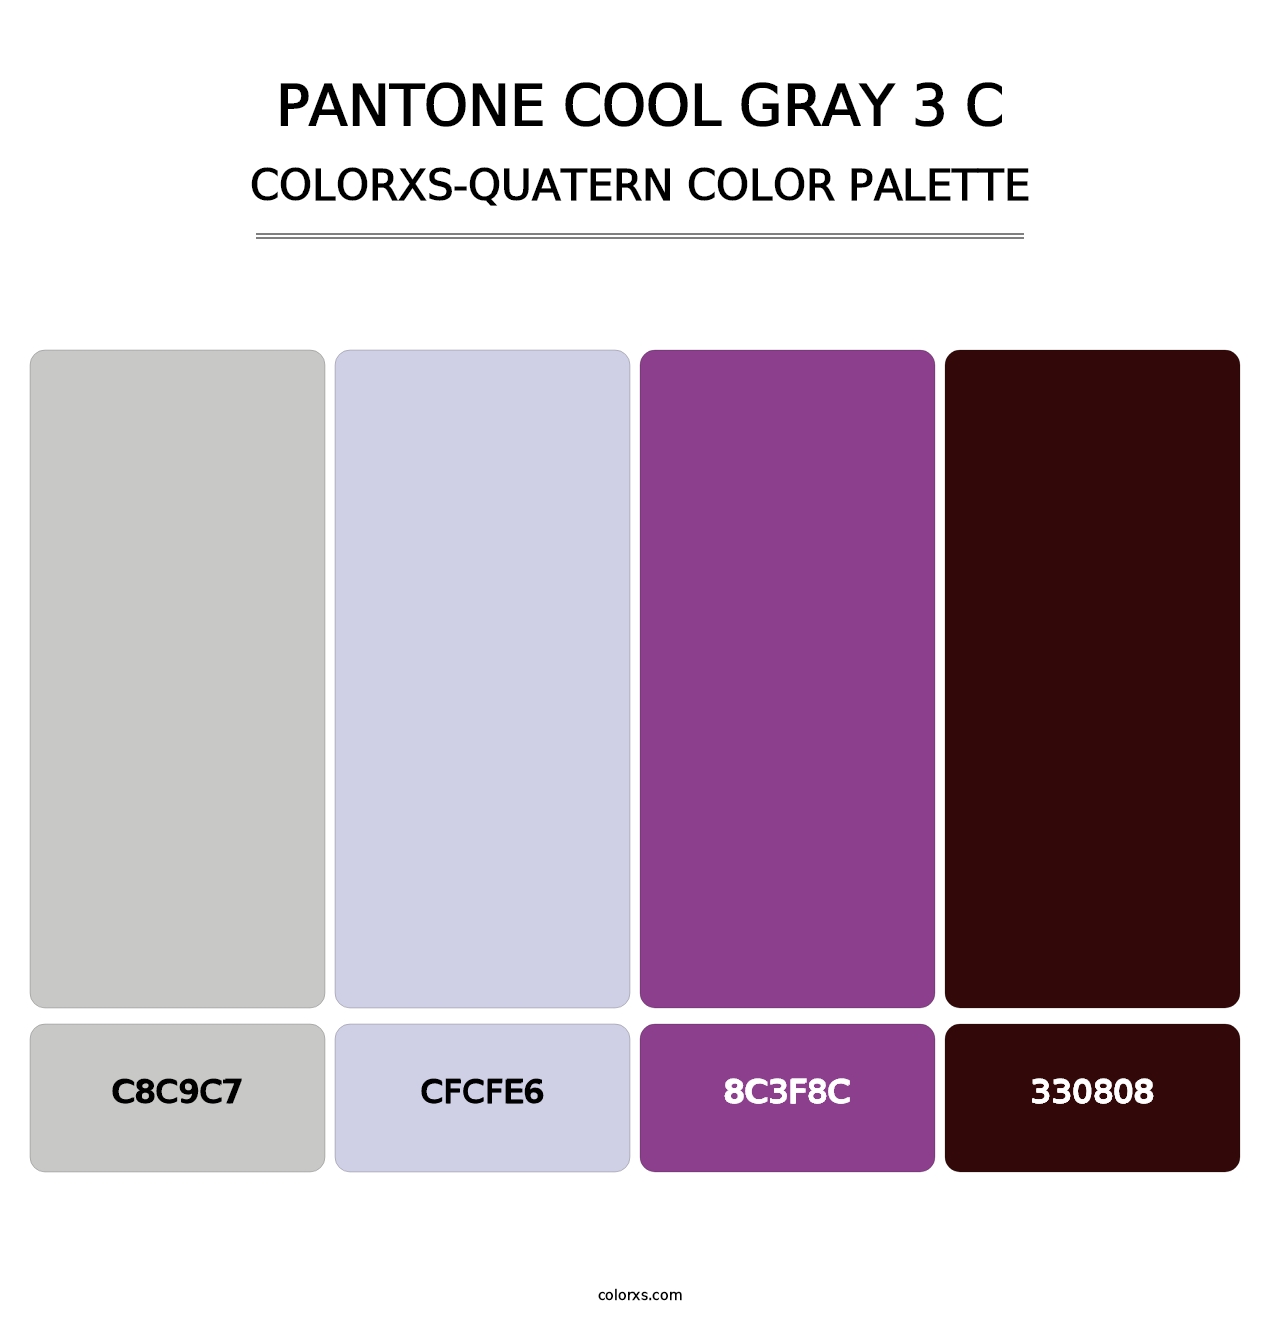 PANTONE Cool Gray 3 C - Colorxs Quatern Palette